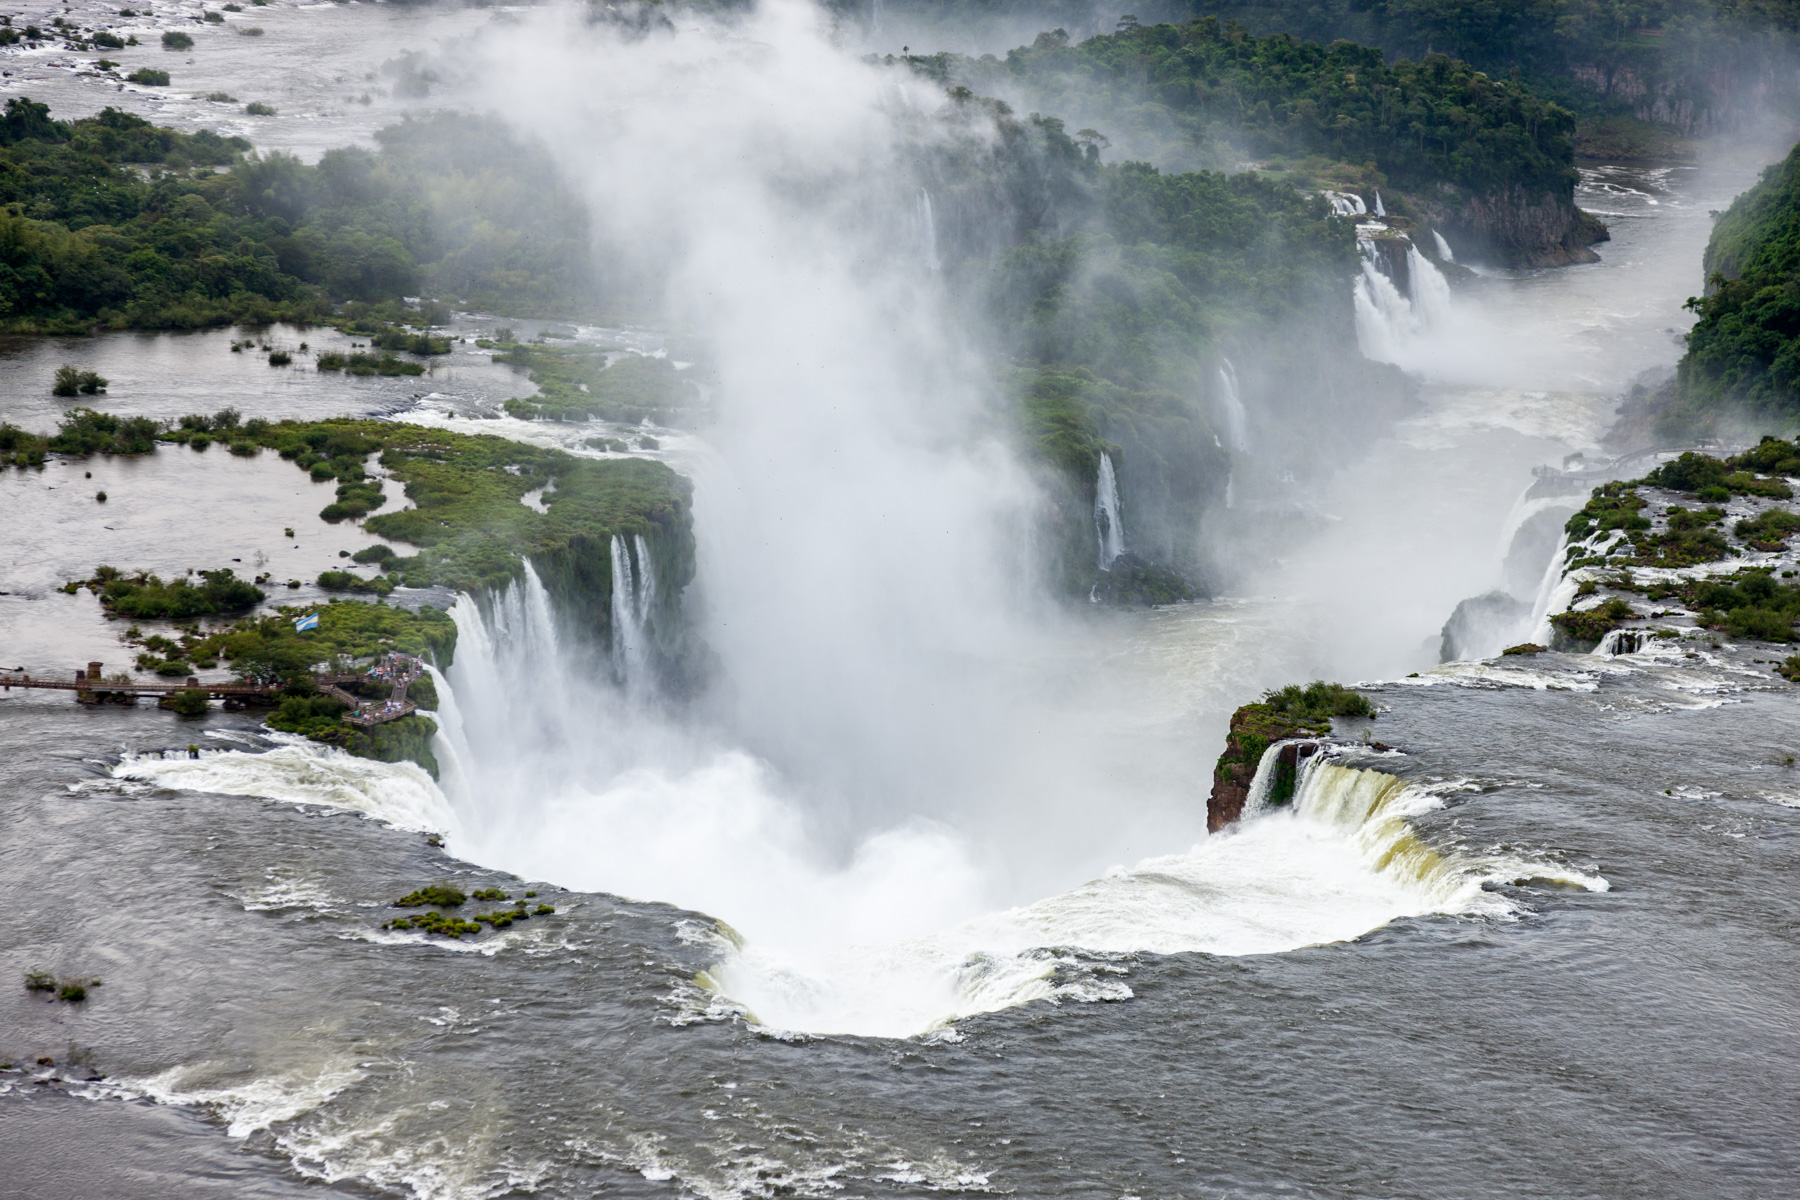 Chutes d’eau d’Iguazú, province de Misiones (25°41' S, 54°26' O).